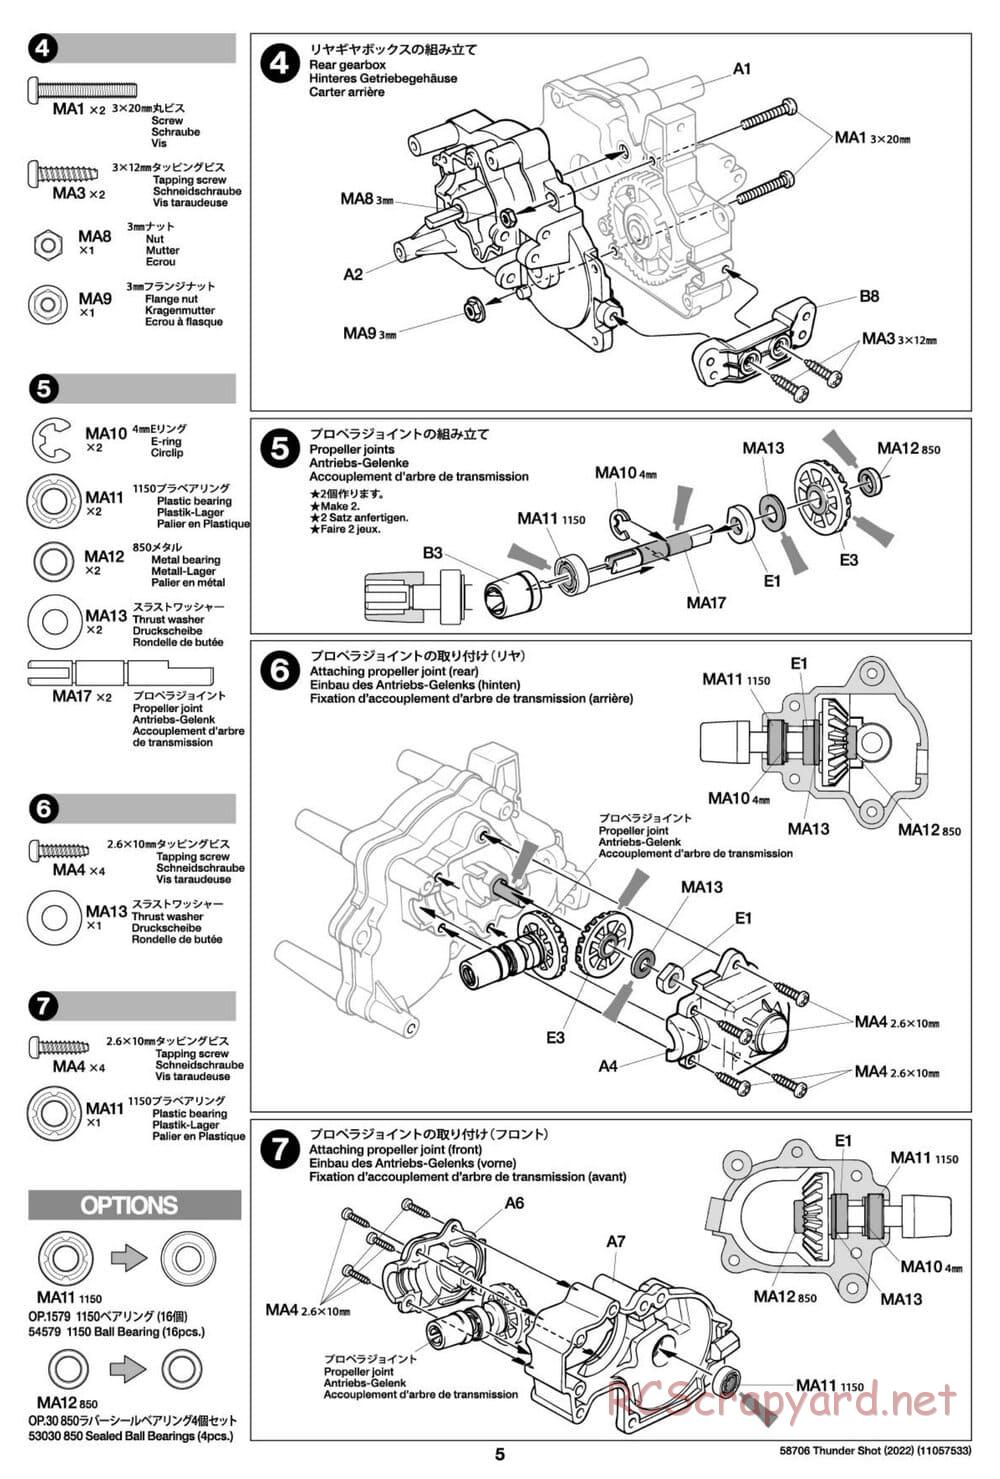 Tamiya - Thunder Shot (2022) - TS1/TS2 Chassis - Manual - Page 5